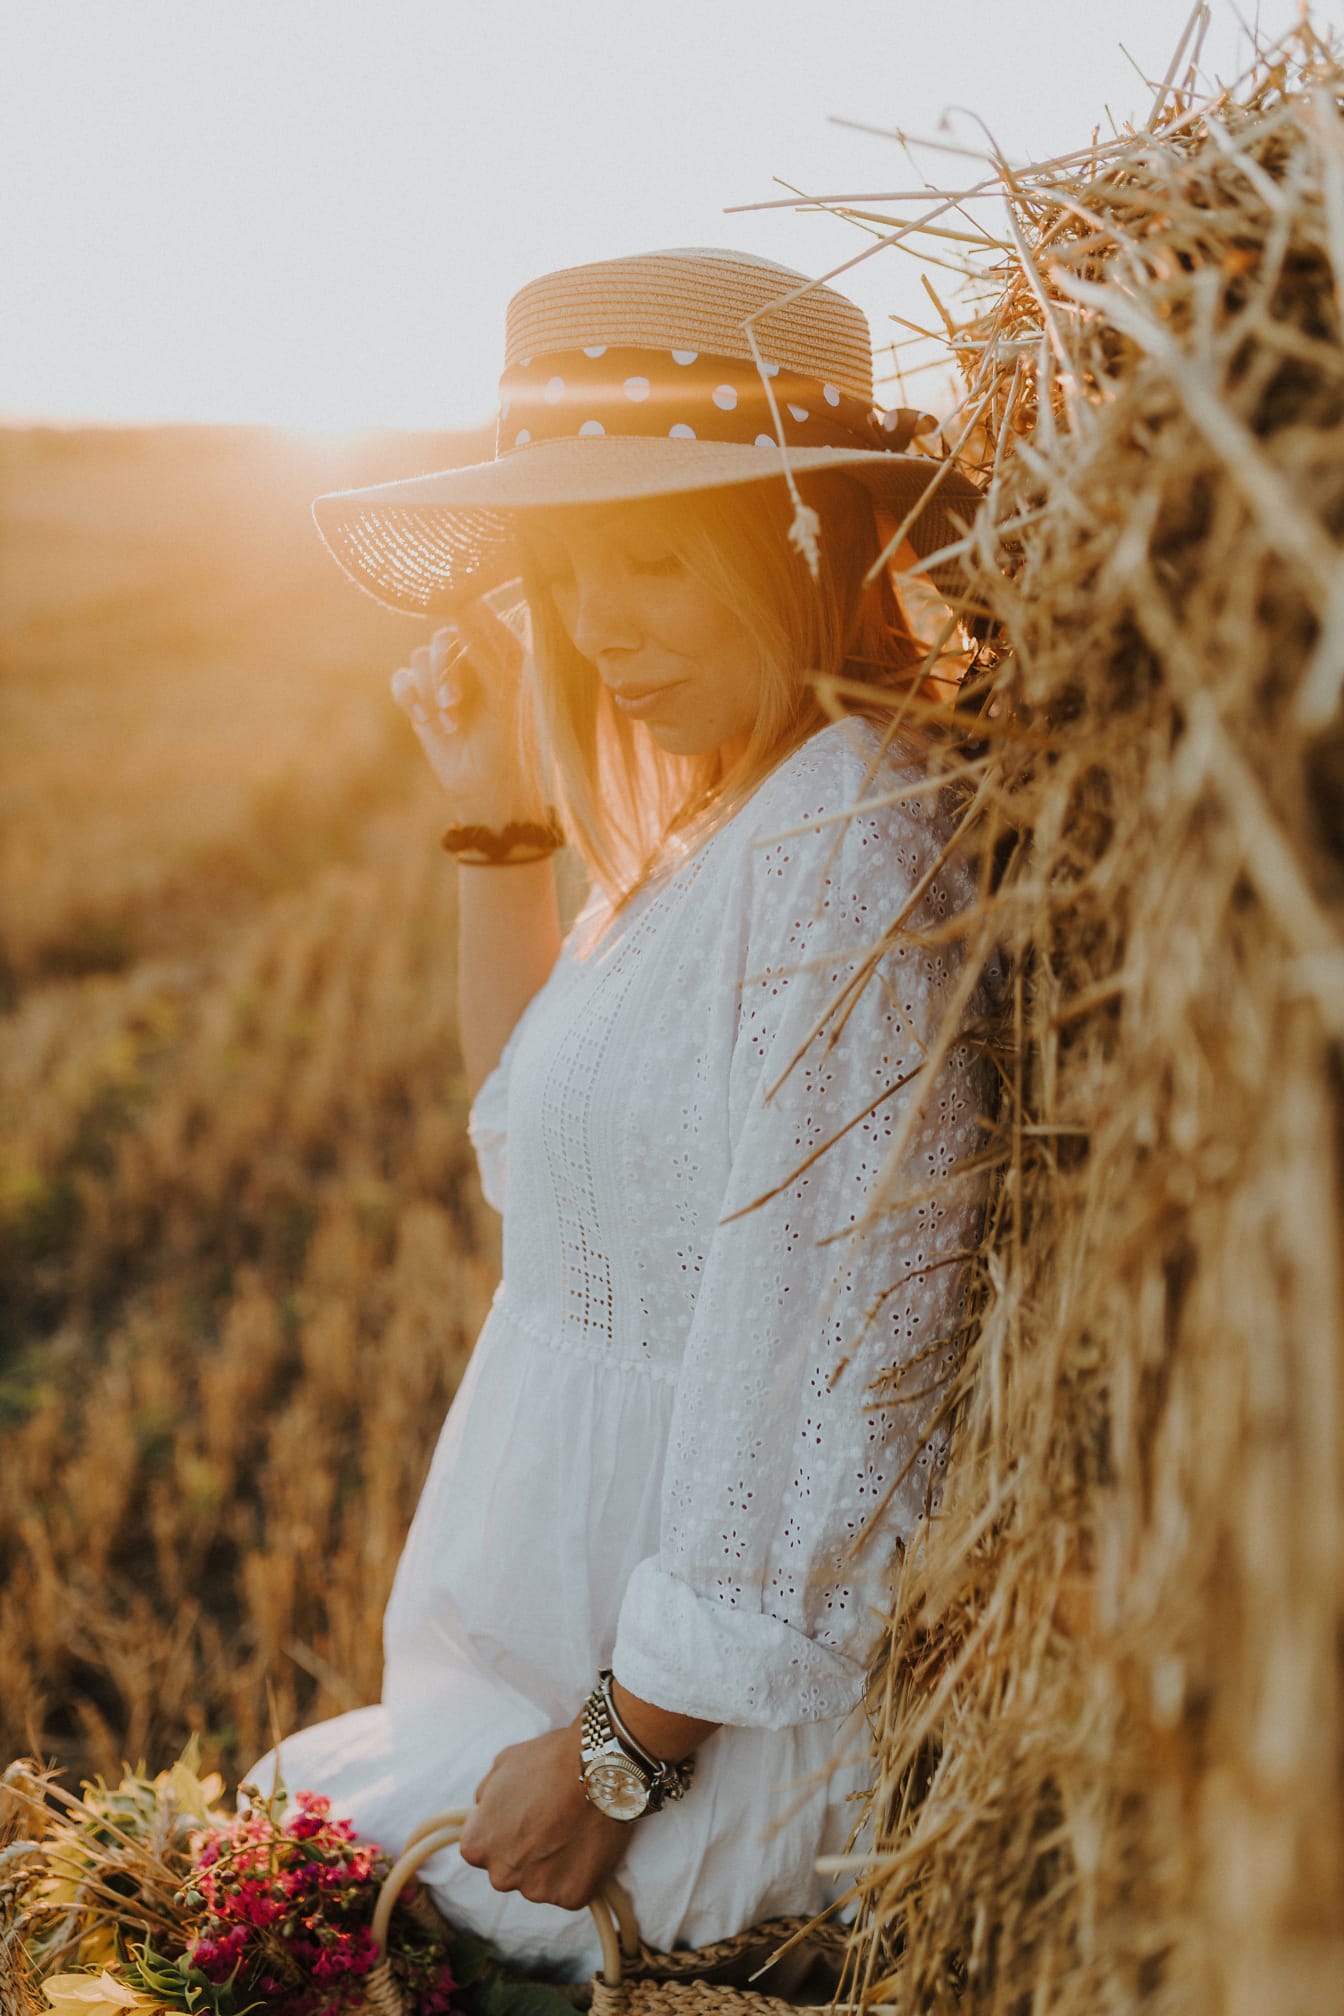 Người phụ nữ trẻ xinh đẹp với chiếc mũ bên đống cỏ khô trên cánh đồng lúa mì